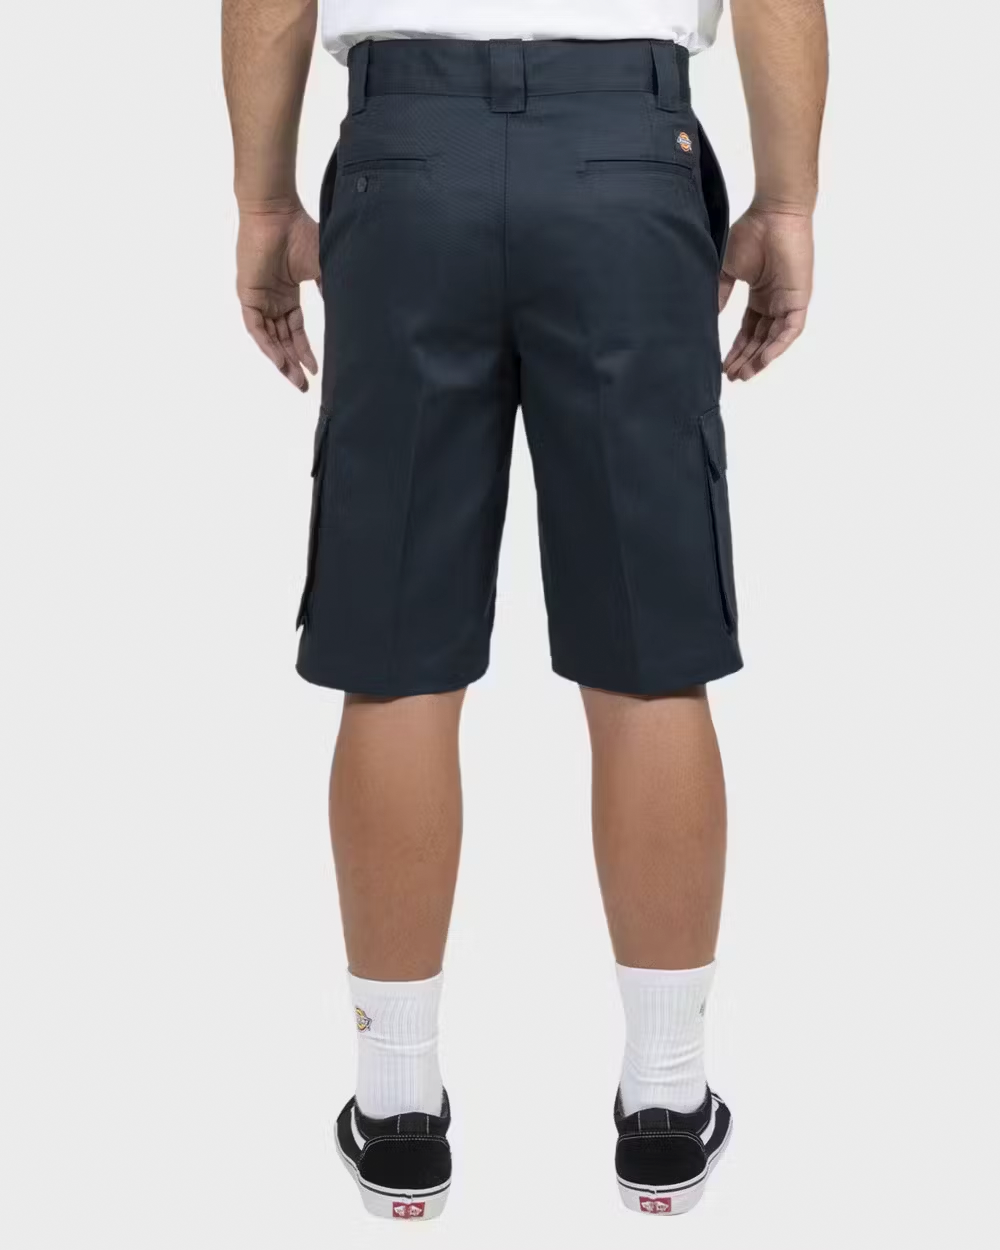 DICKIES 801 Skinny Straight Fit Shorts - Dark Navy - VENUE.